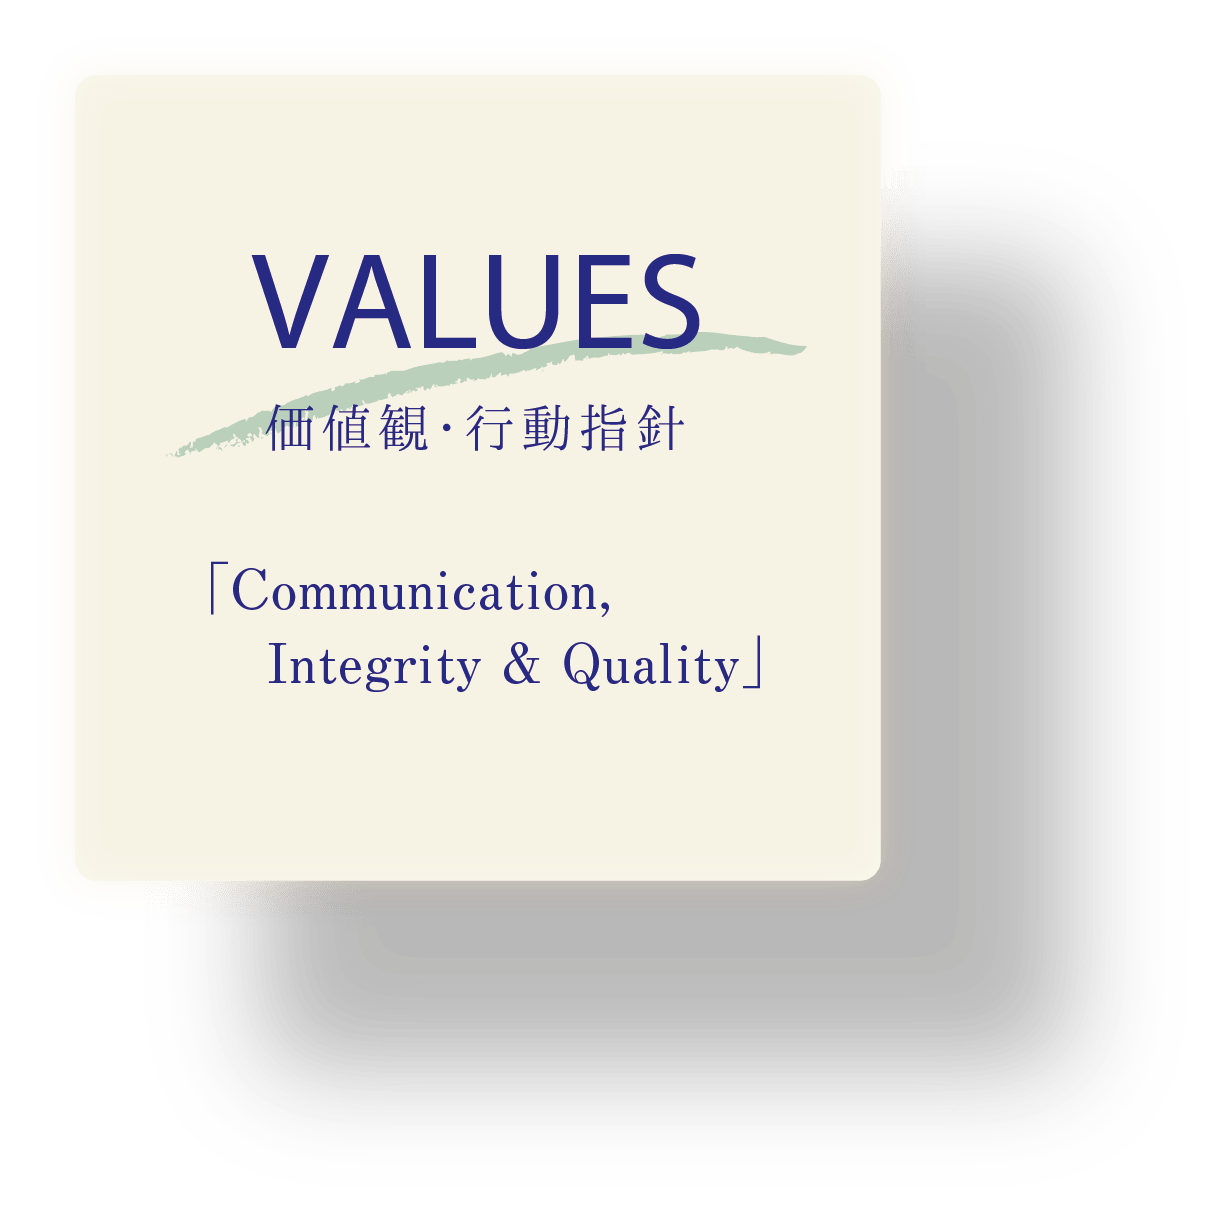 VALUES 価値観・行動指針「Communication, Integrity & Quality」